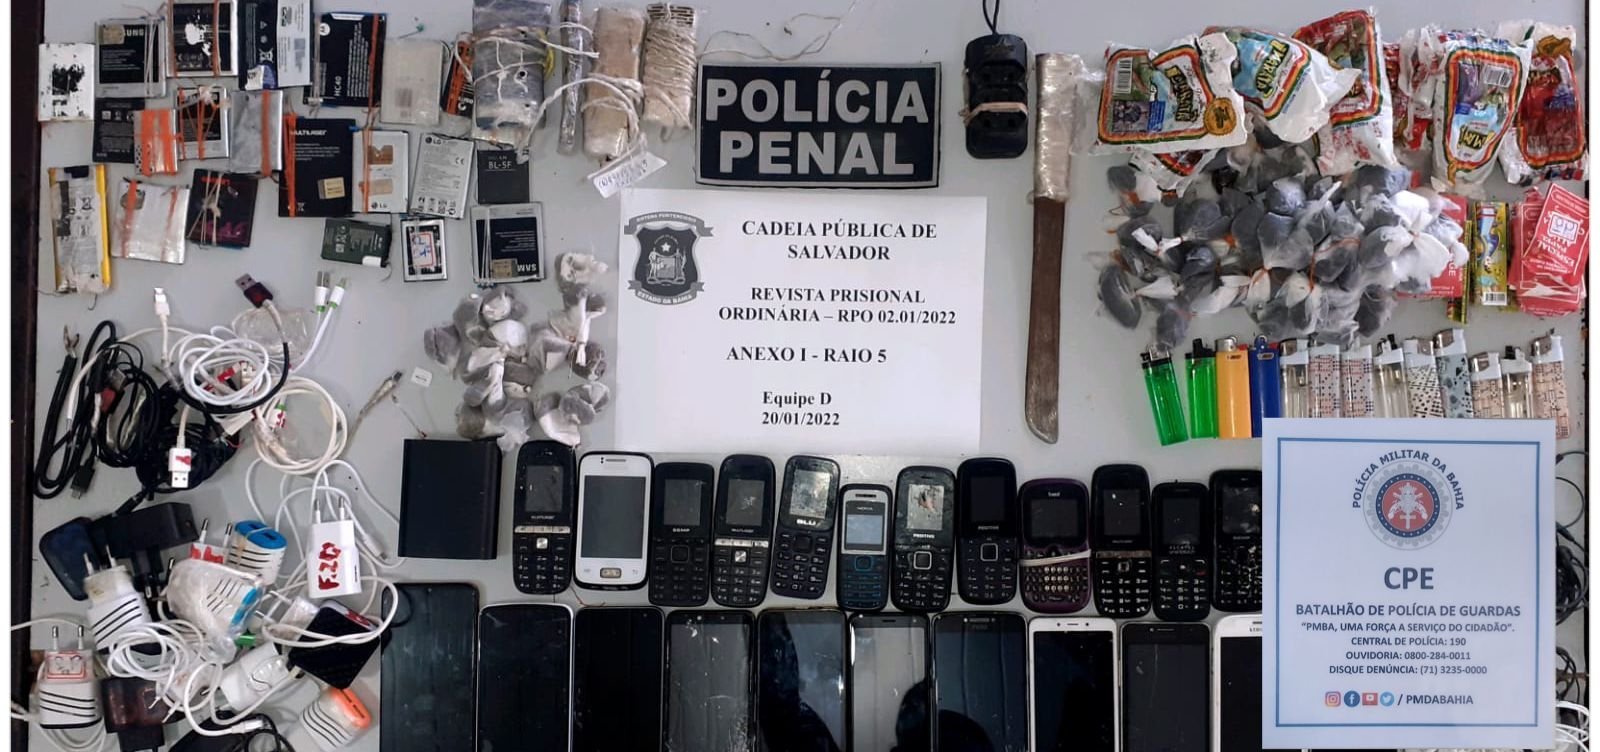 Revista de rotina na Cadeia Pública termina com 24 celulares apreendidos